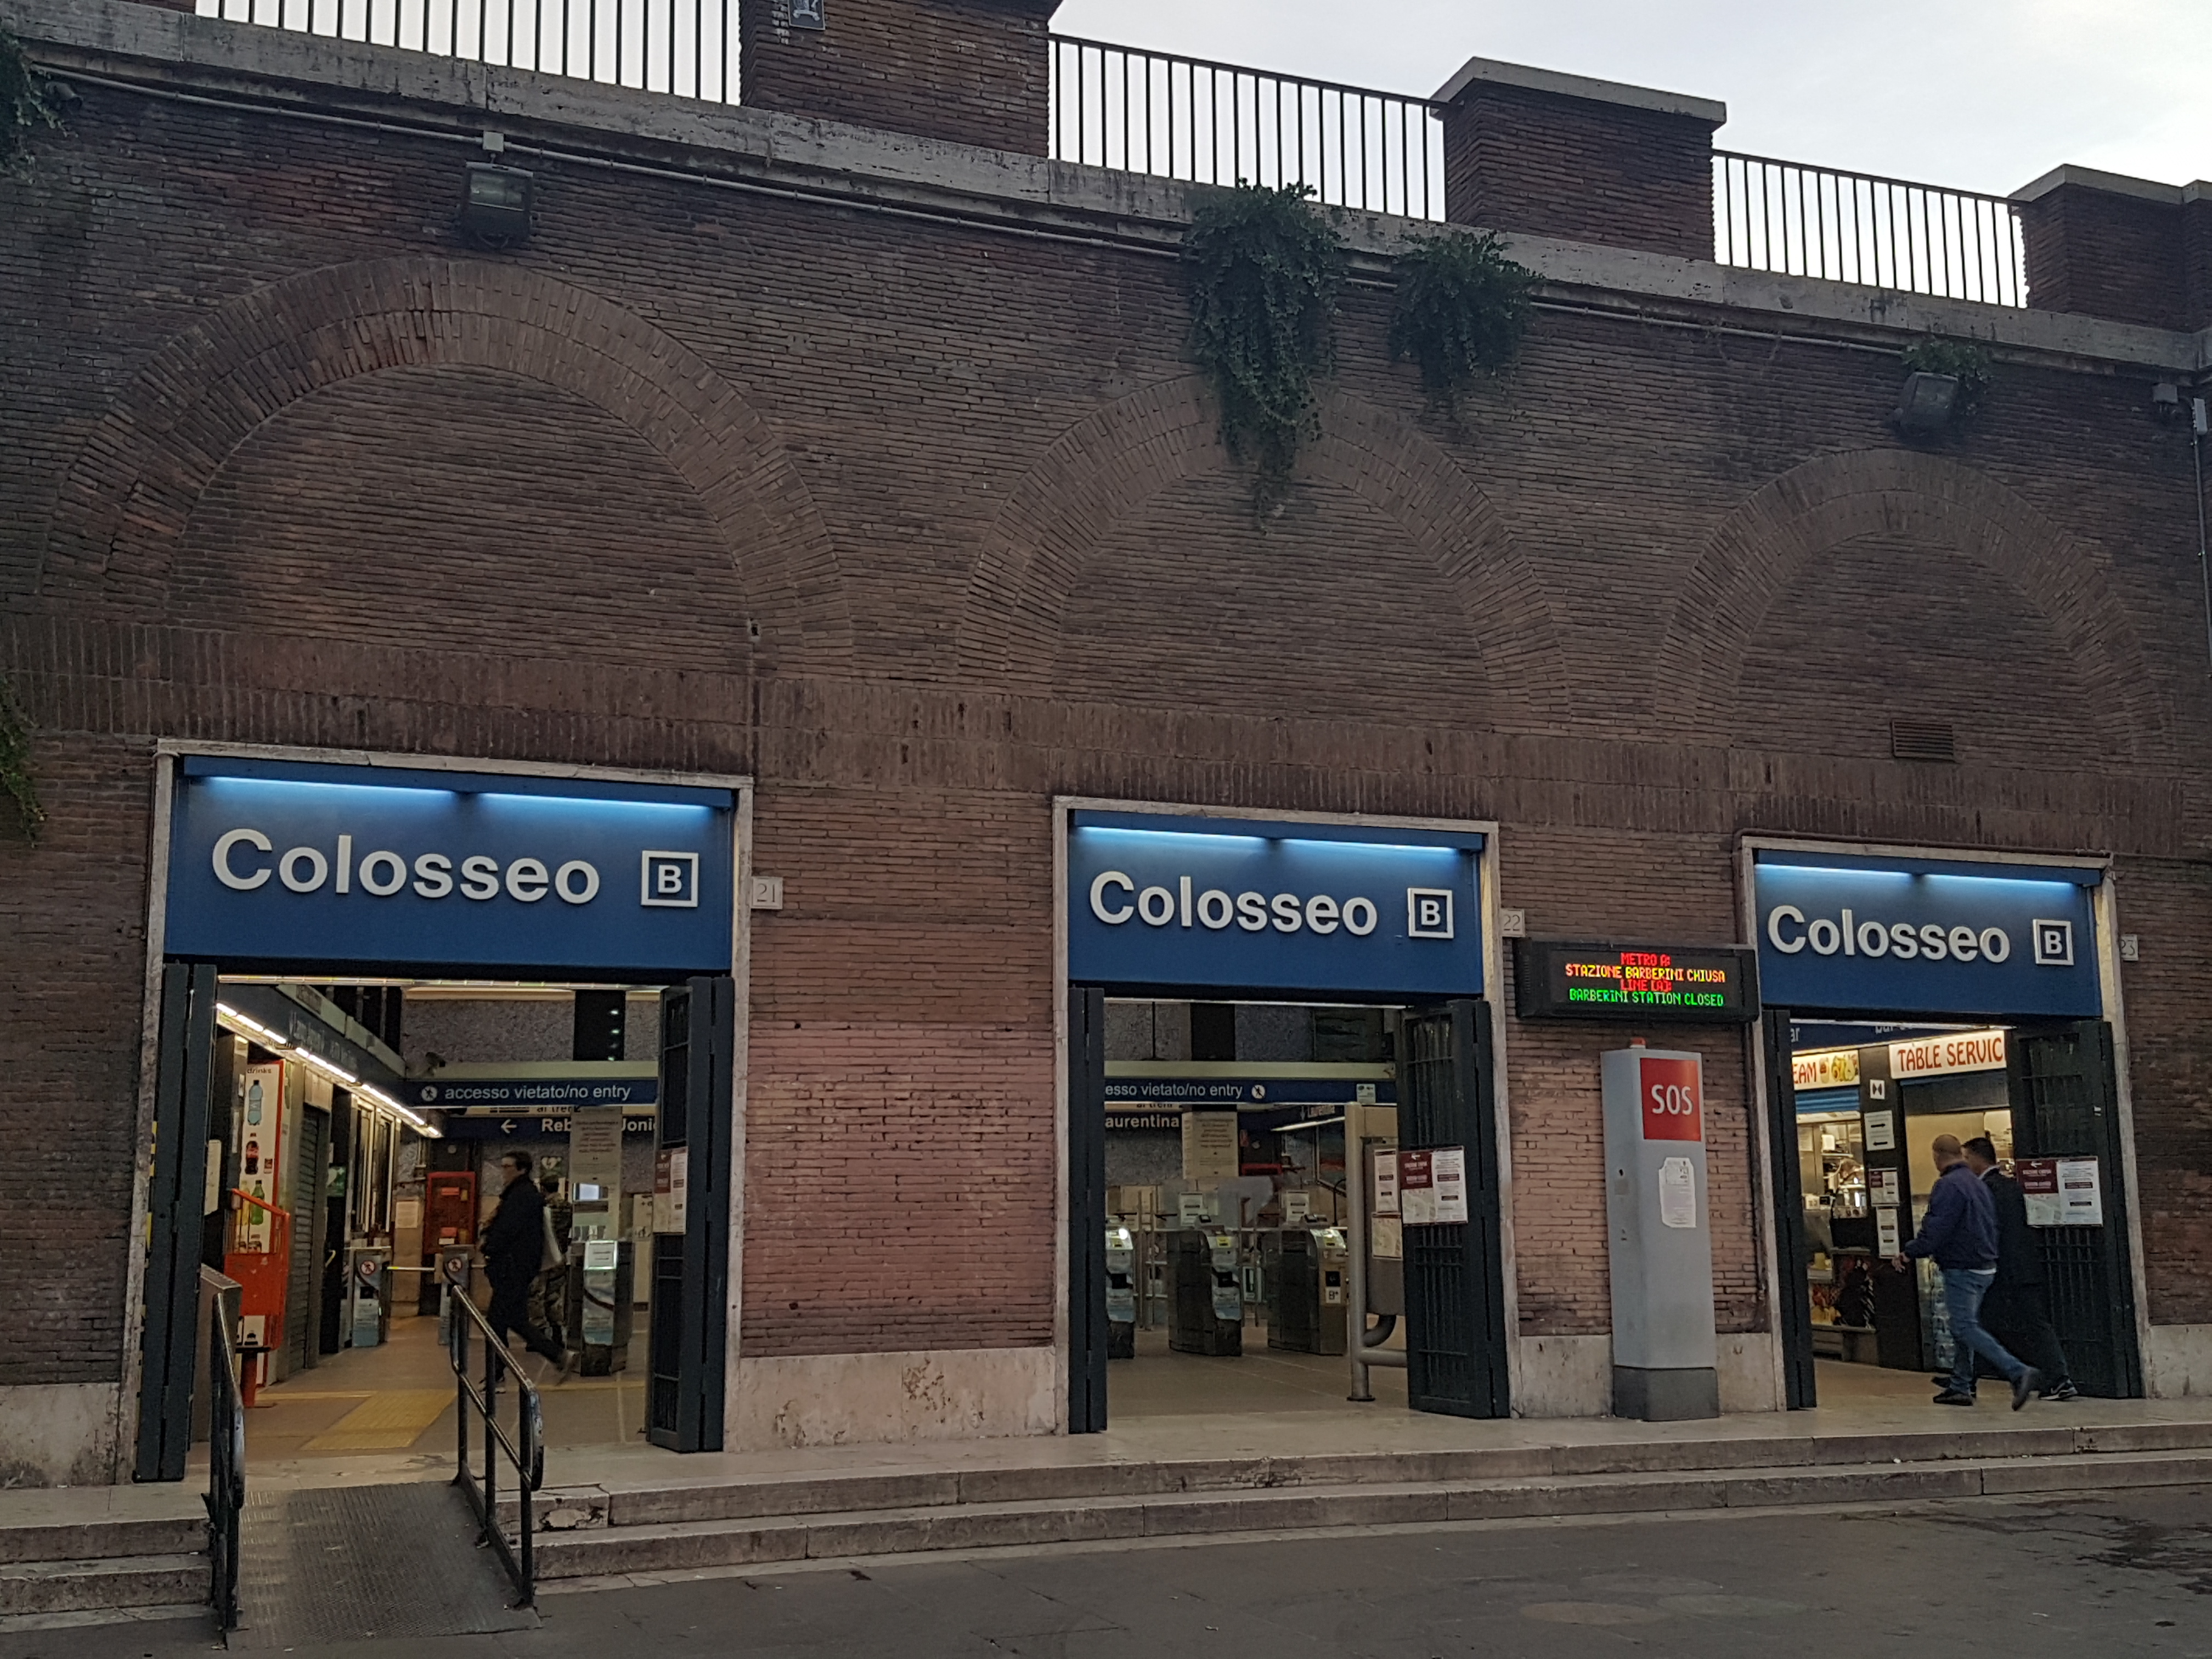 Colosseo Metro